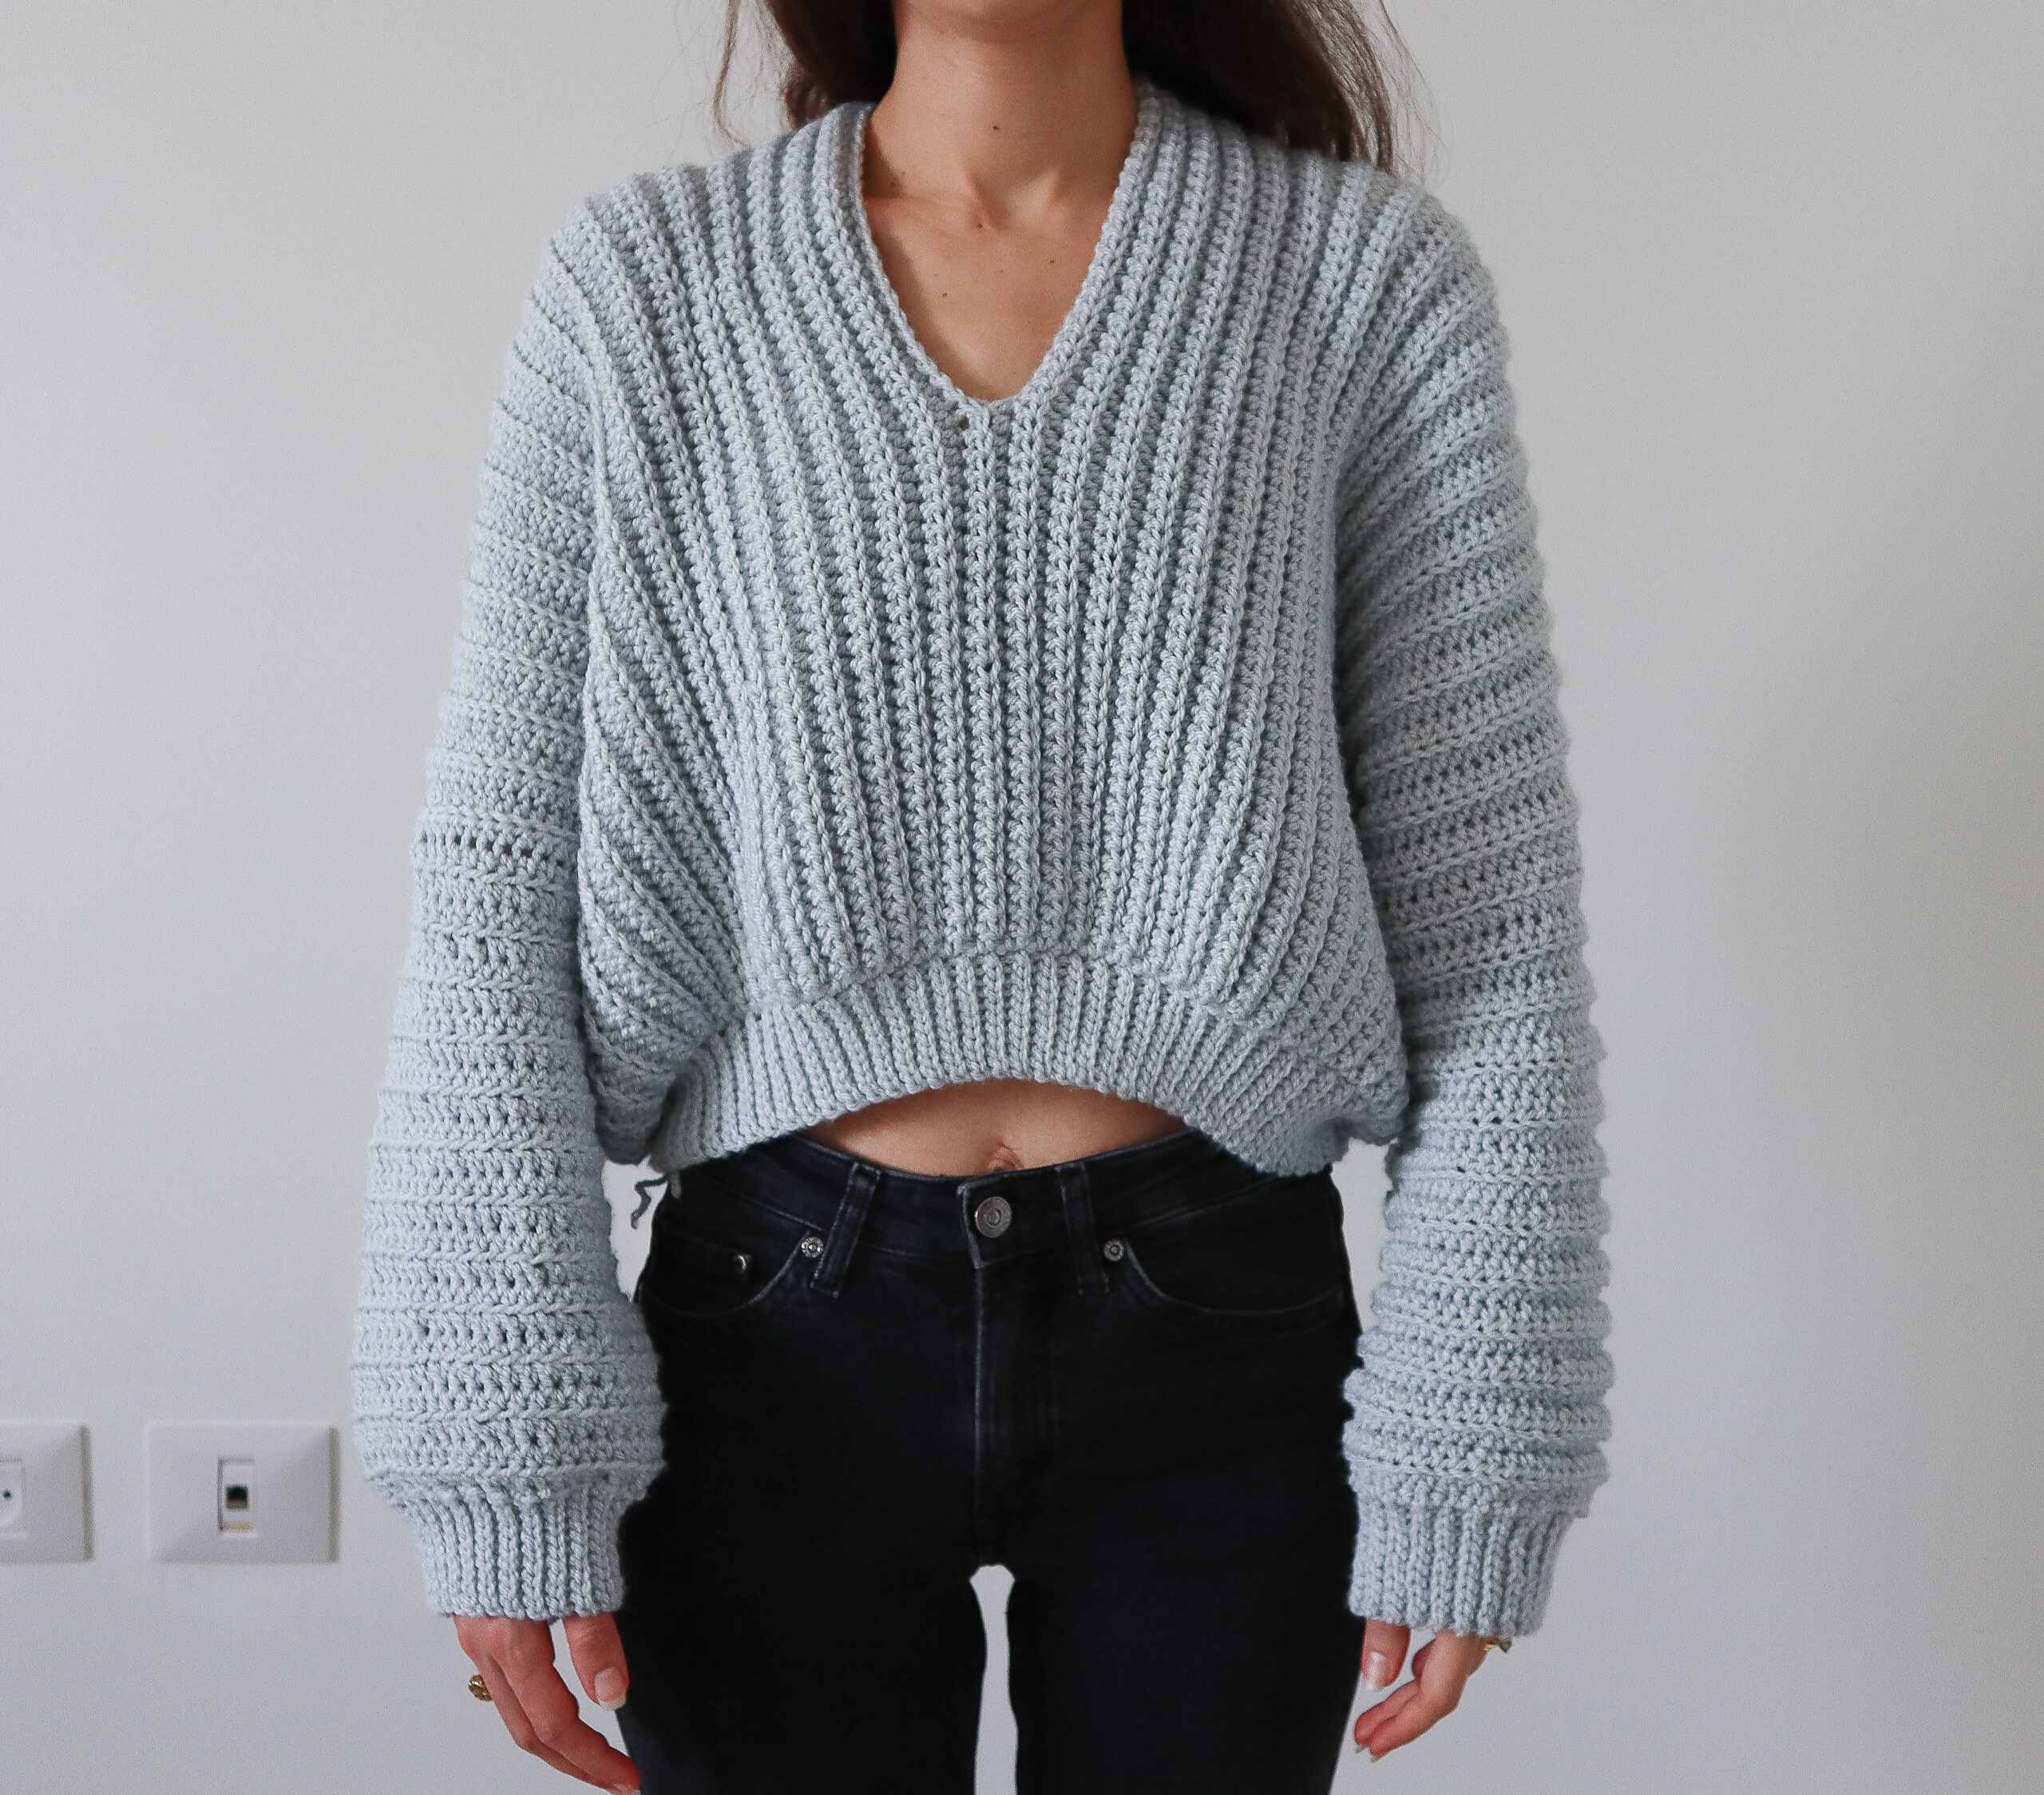 Super Slouchy Sweater - Crochet Pattern